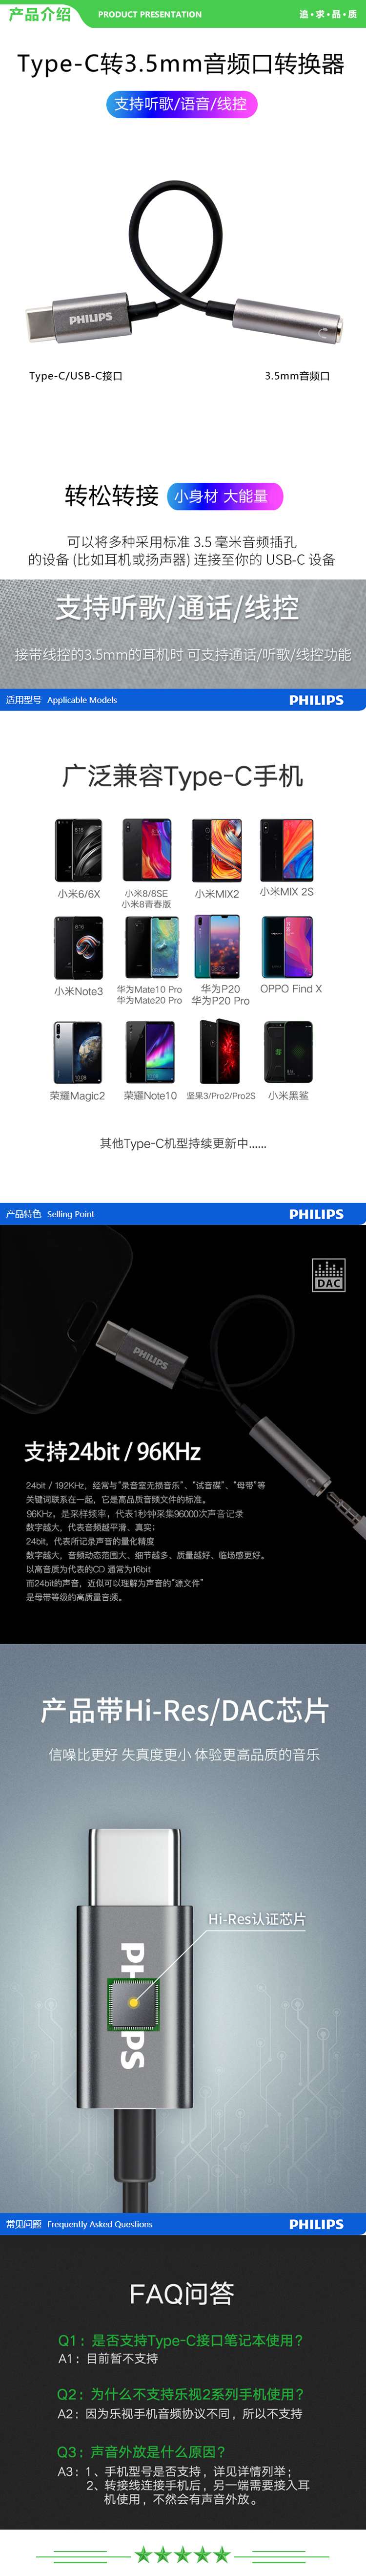 飞利浦 PHILIPS SWR1504H TYPE-C转3.5mm音频转接头 USB-C手机转接头 .jpg